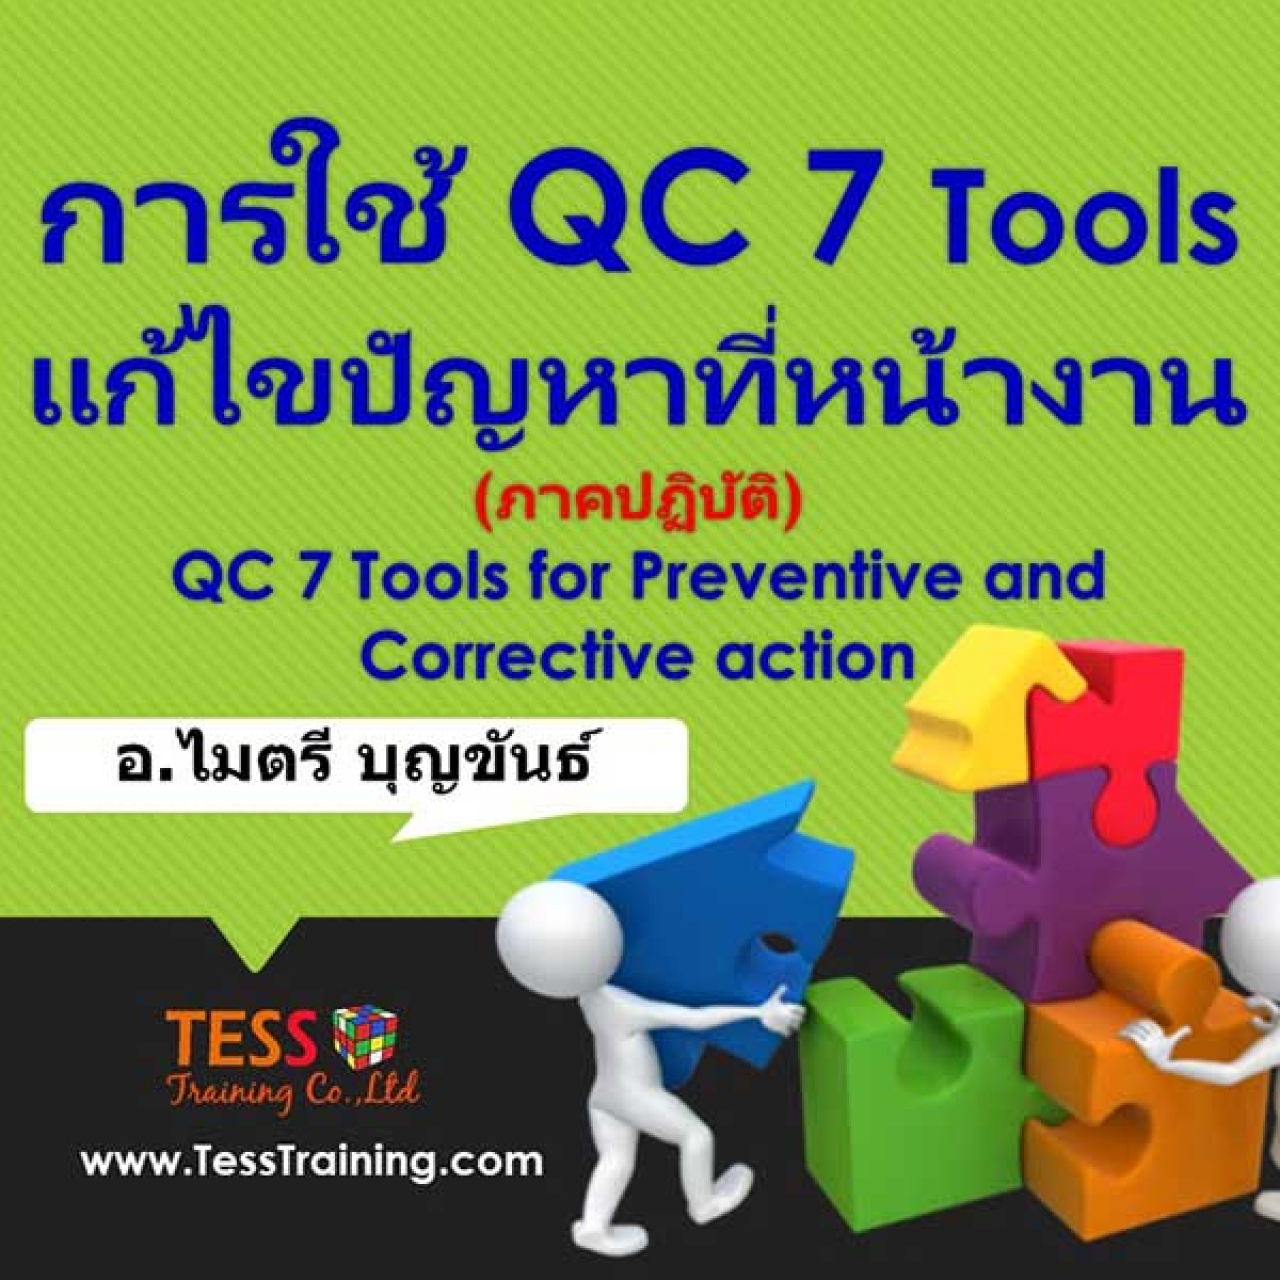 หลักสูตร การใช้ QC 7 Tools แก้ไขปัญหาที่หน้างาน(ภาคปฏิบัติ)(20 ก.พ. 62) อ.ไมตรี